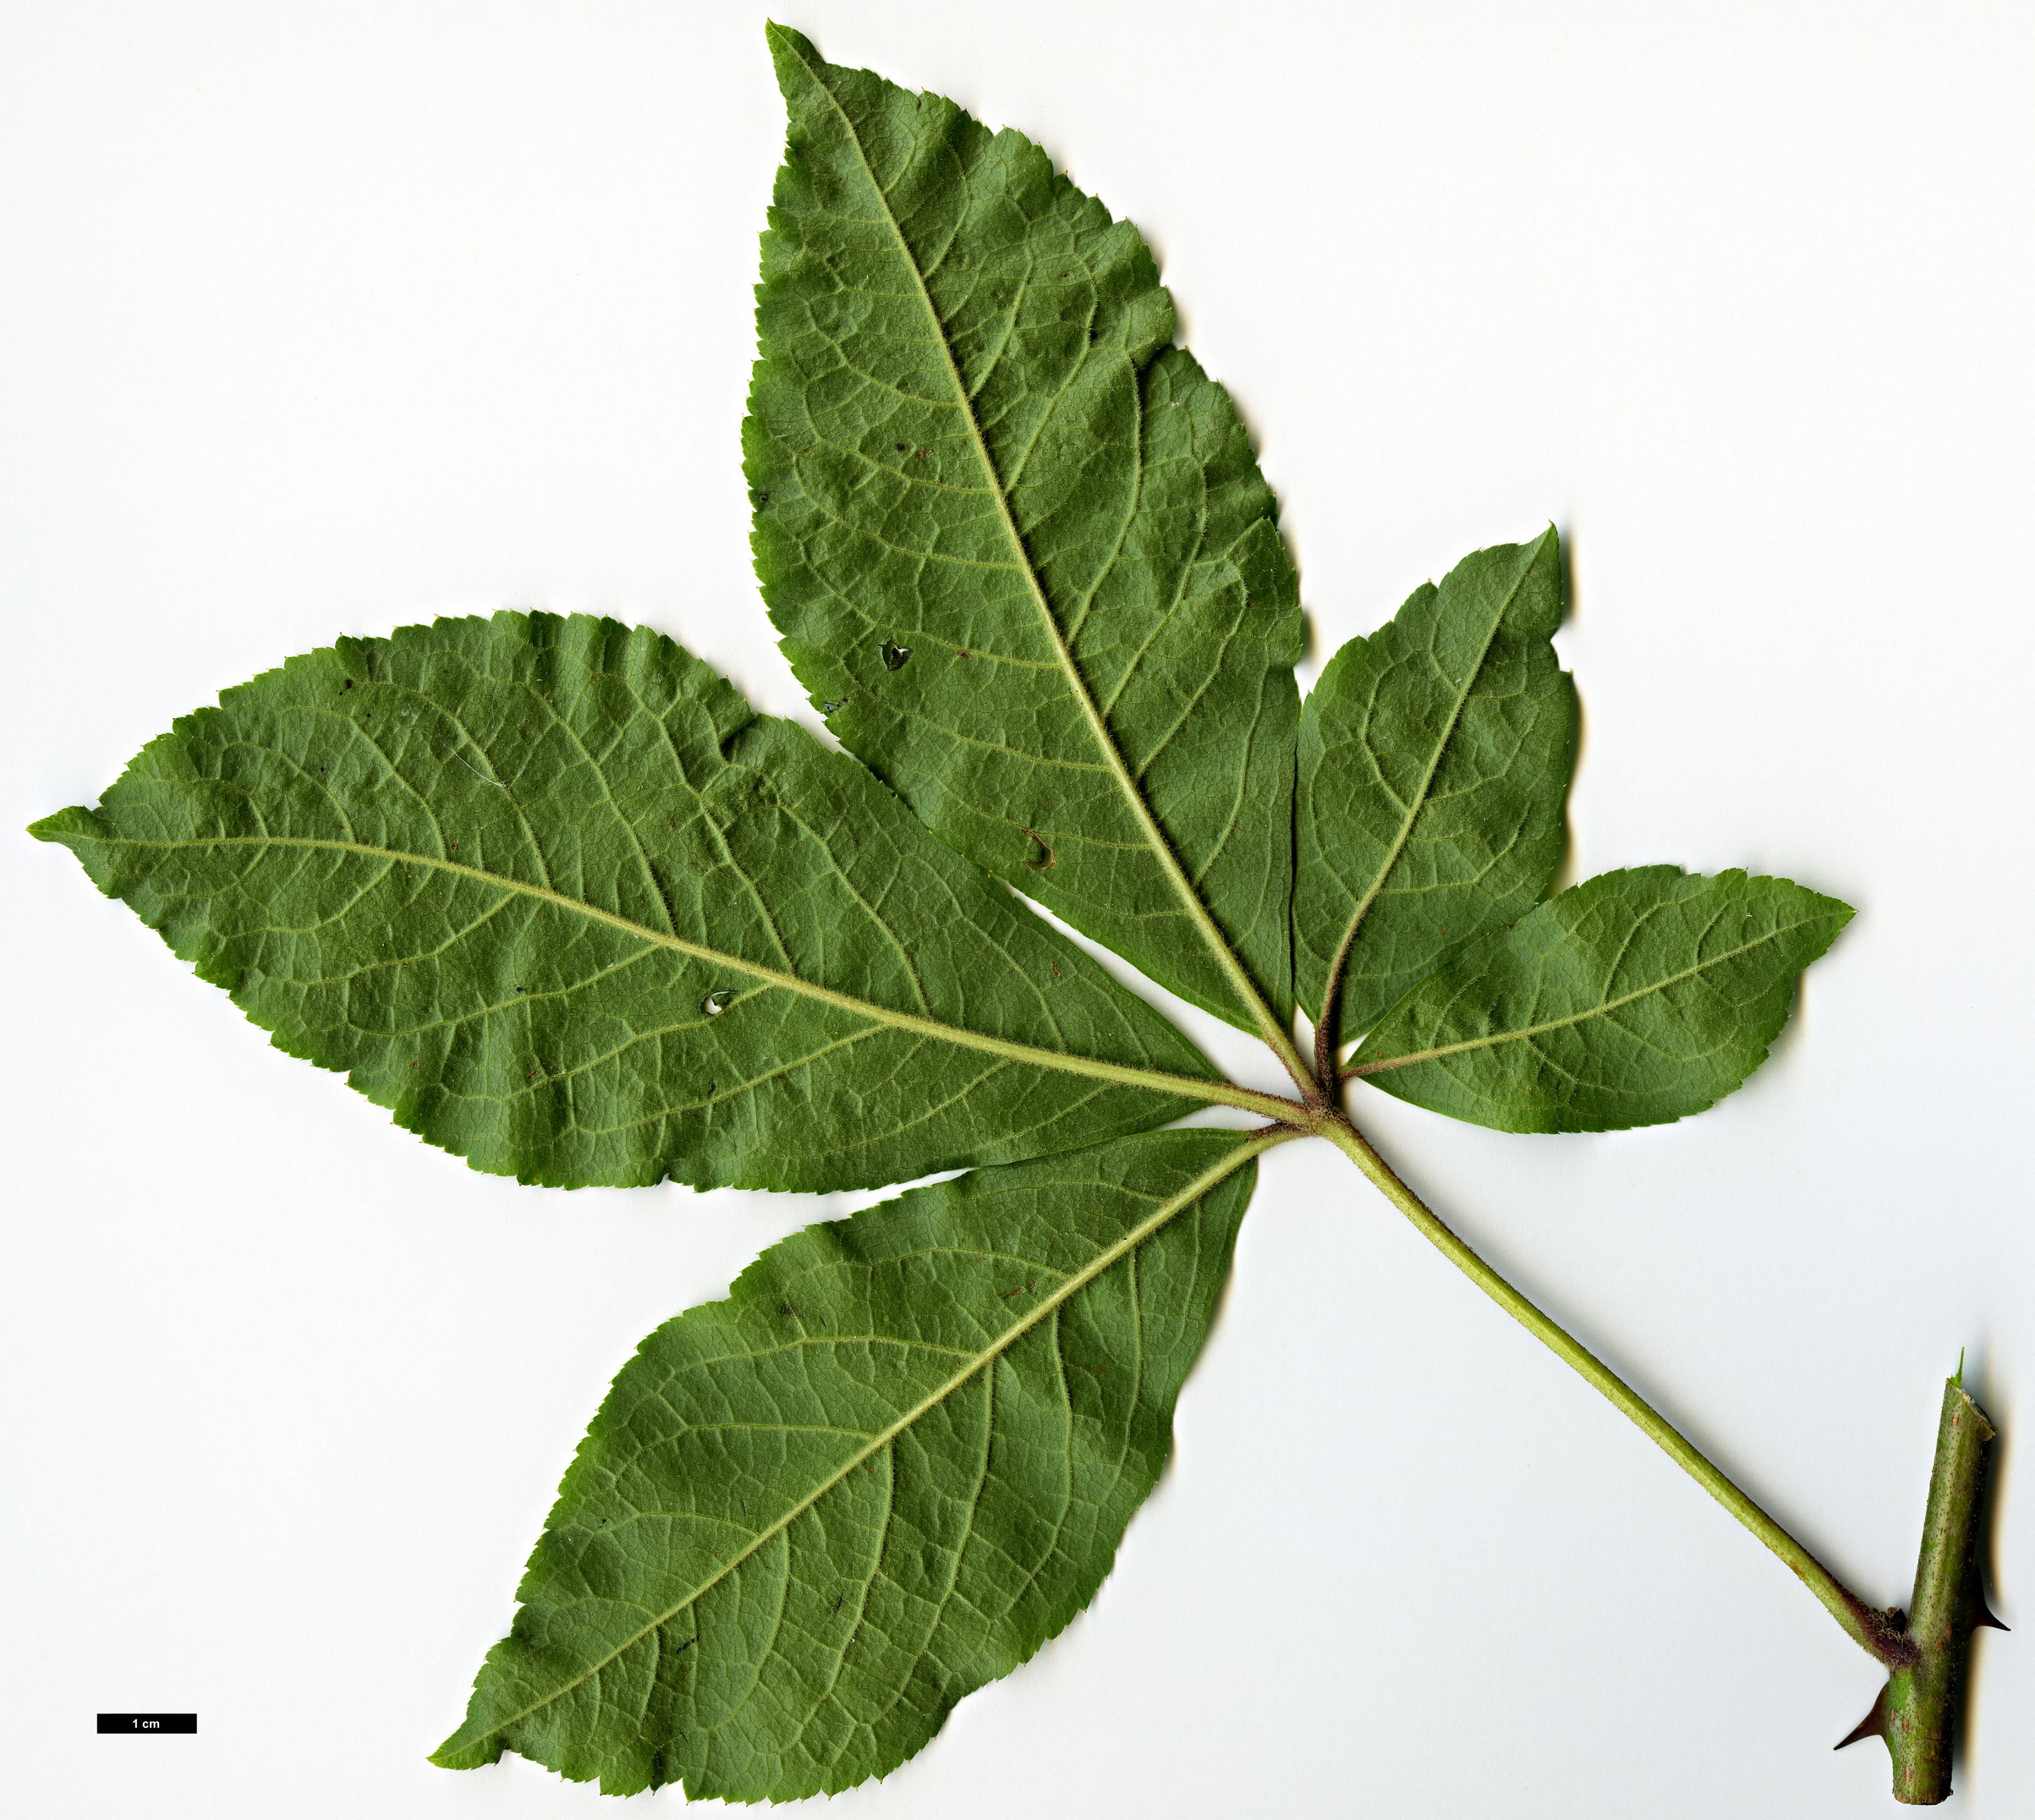 High resolution image: Family: Araliaceae - Genus: Eleutherococcus - Taxon: leucorrhizus - SpeciesSub: var. leucorrhizus